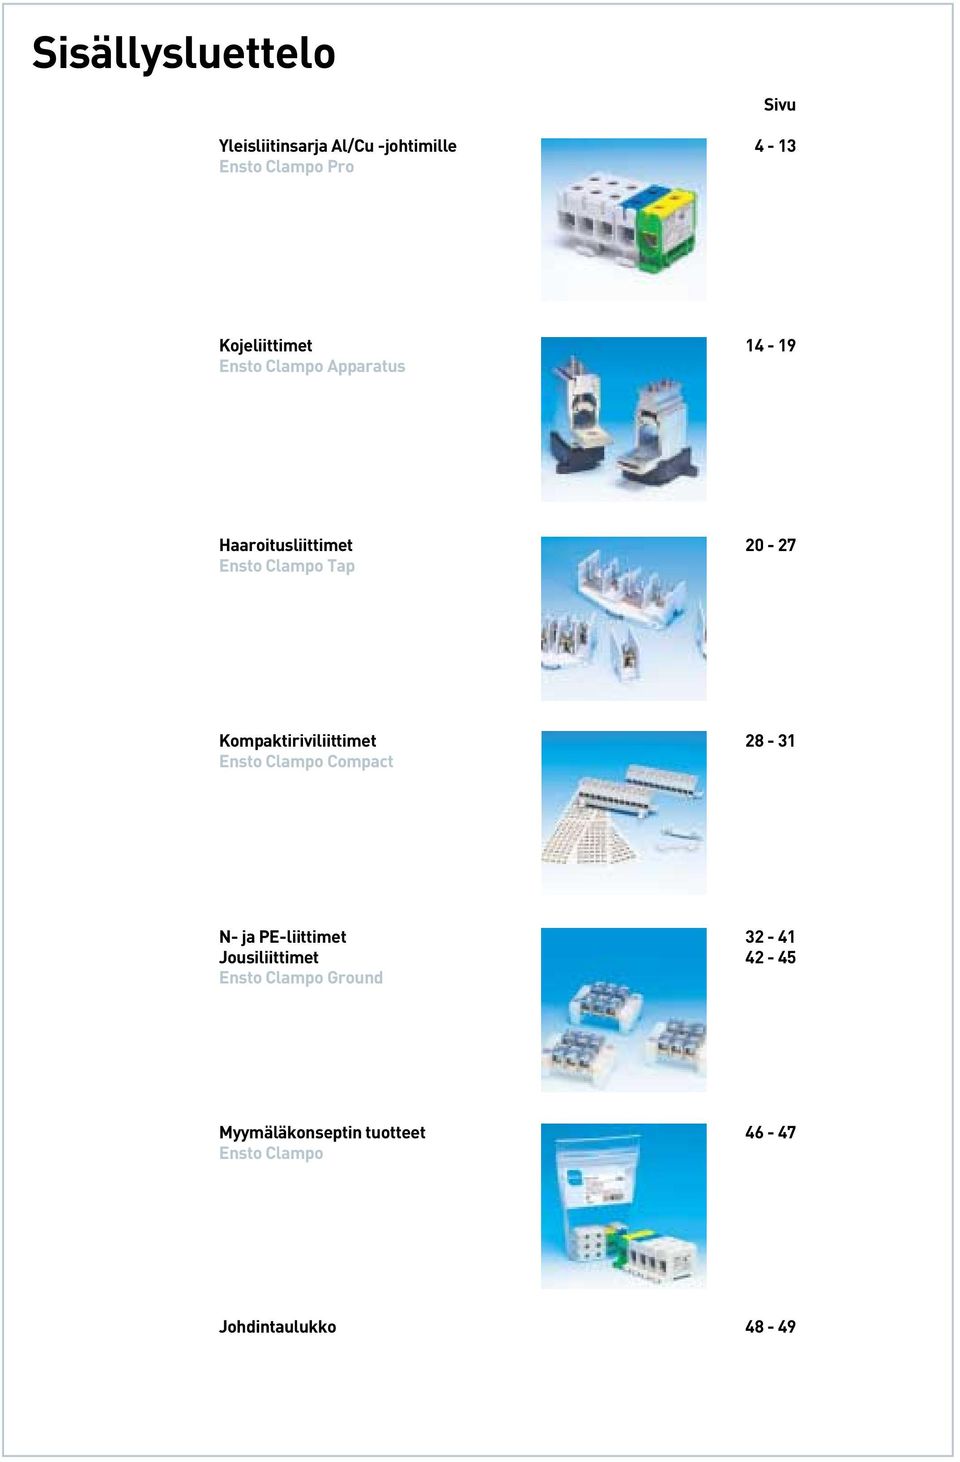 Kompaktiriviliittimet 28-31 Ensto Clampo Compact N- ja PE-liittimet 32-41